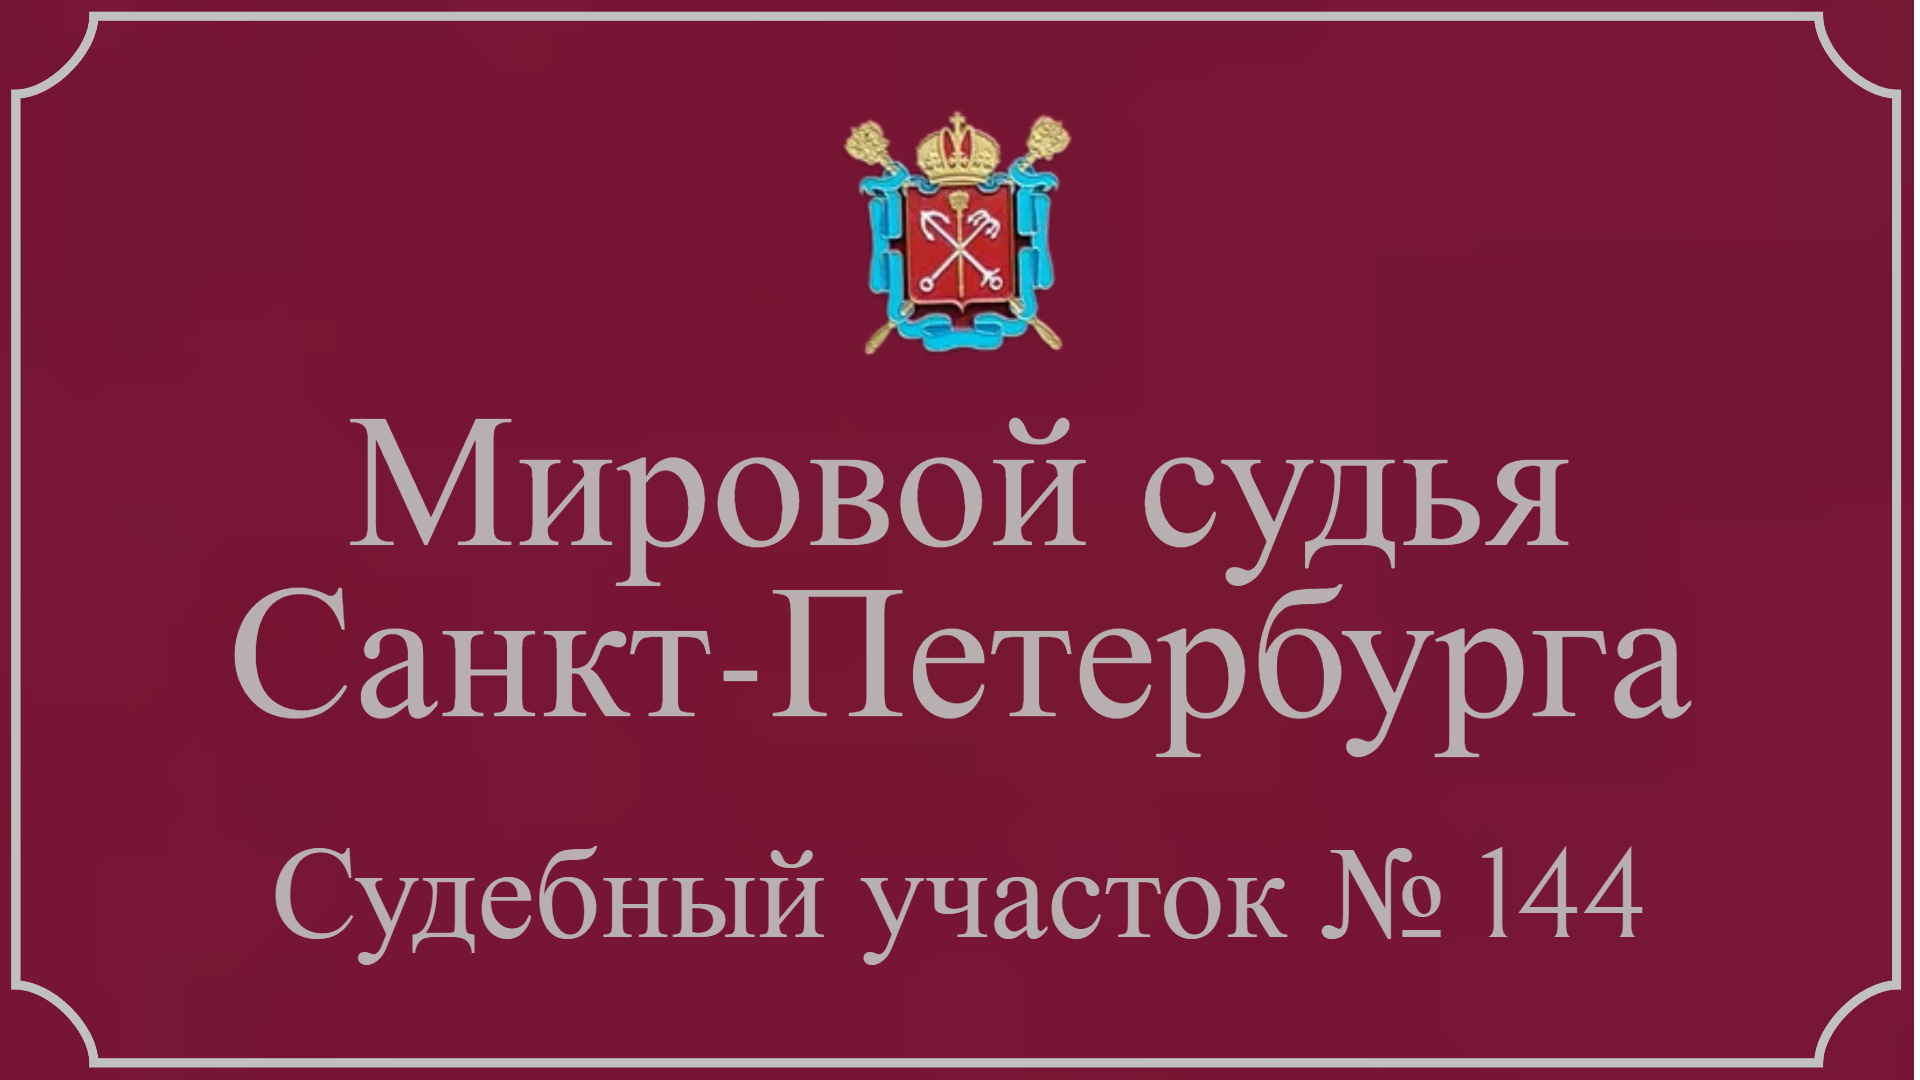 Информация по 144 судебному участку в Санкт-Петербурге.